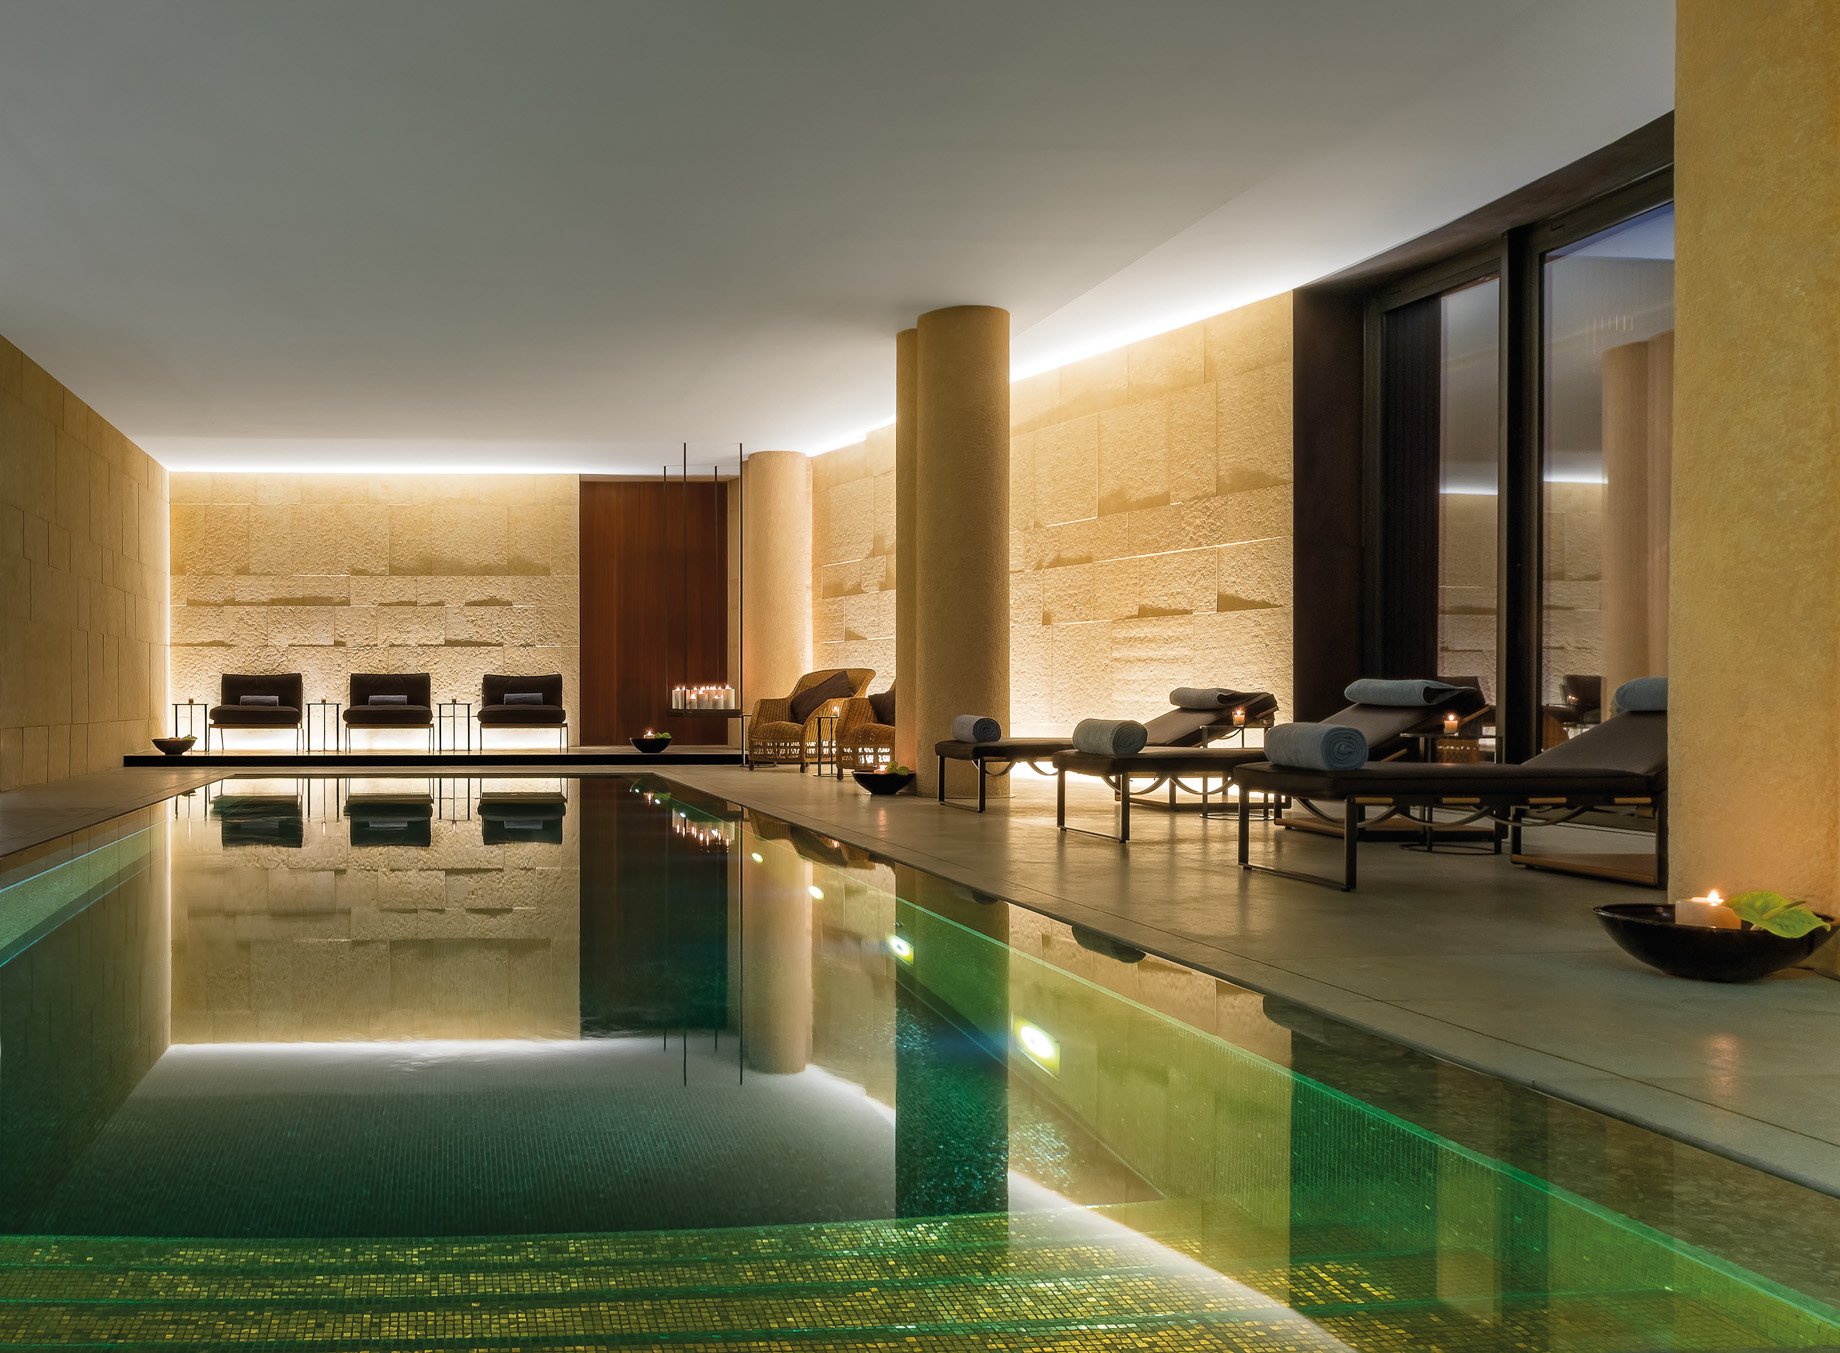 Bvlgari Hotel Milano – Milan, Italy – Bvlgari Spa Swimming Pool